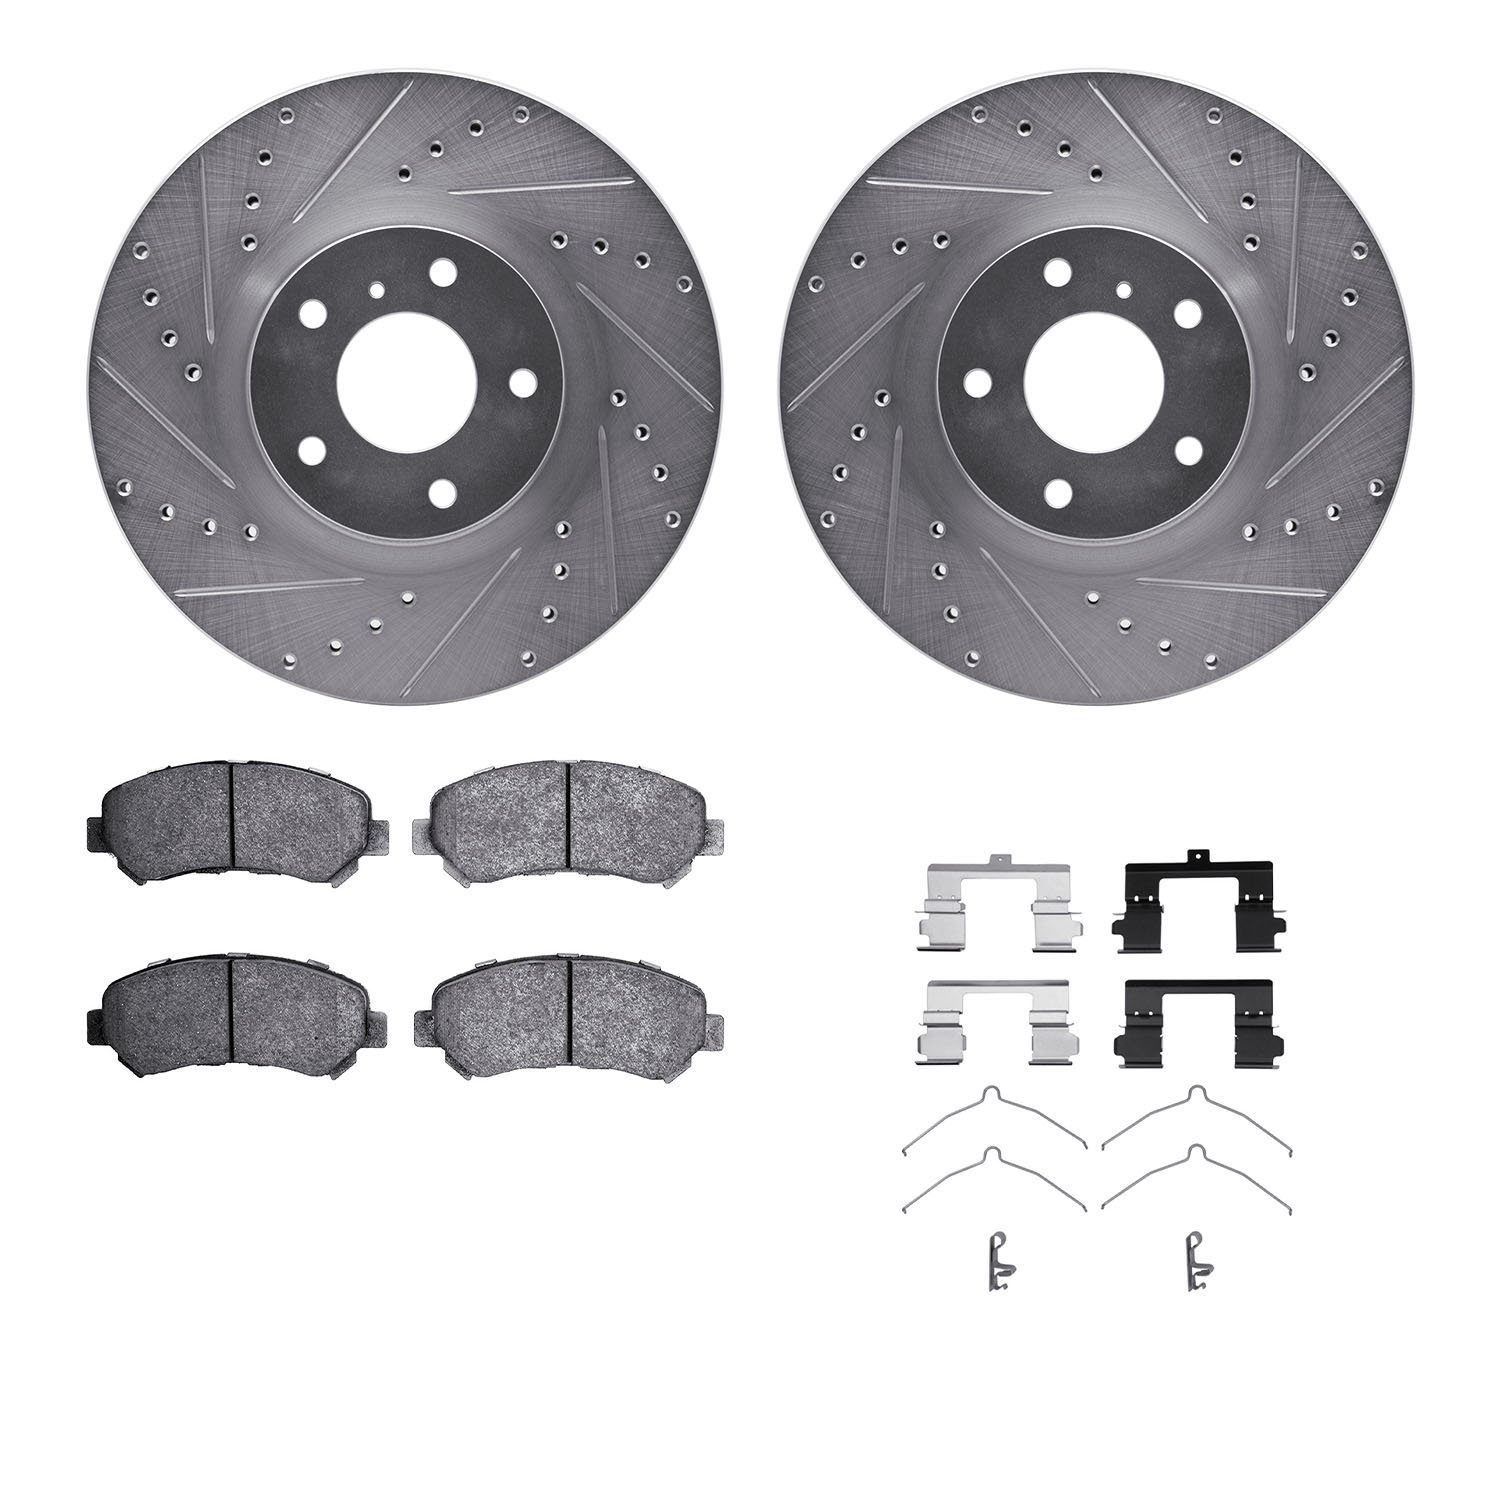 7312-67115 Drilled/Slotted Brake Rotor with 3000-Series Ceramic Brake Pads Kit & Hardware [Silver], 2009-2021 Infiniti/Nissan, P